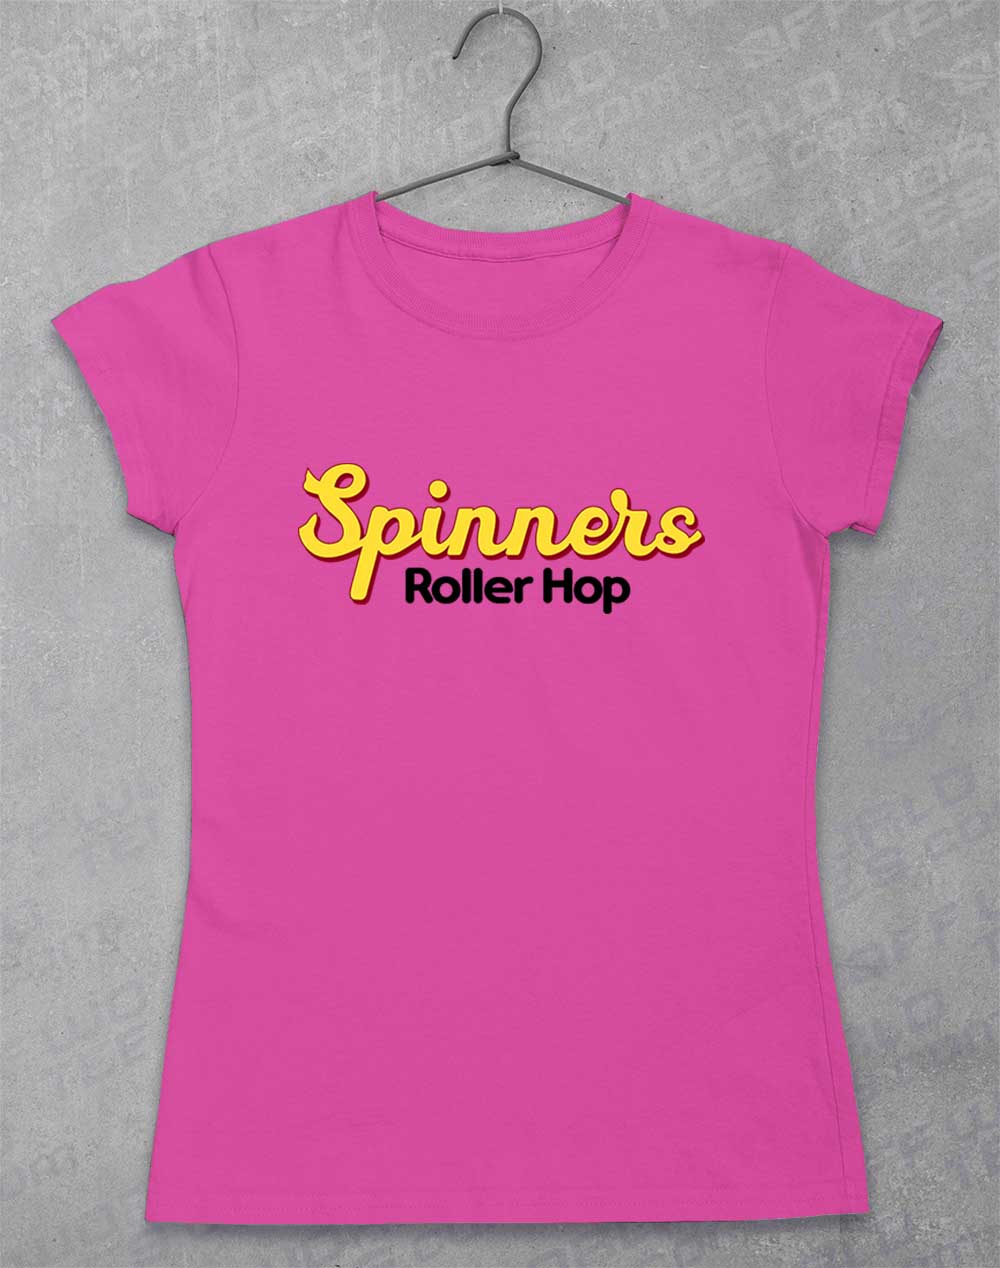 Azalea - Spinners Roller Hop Women's T-Shirt